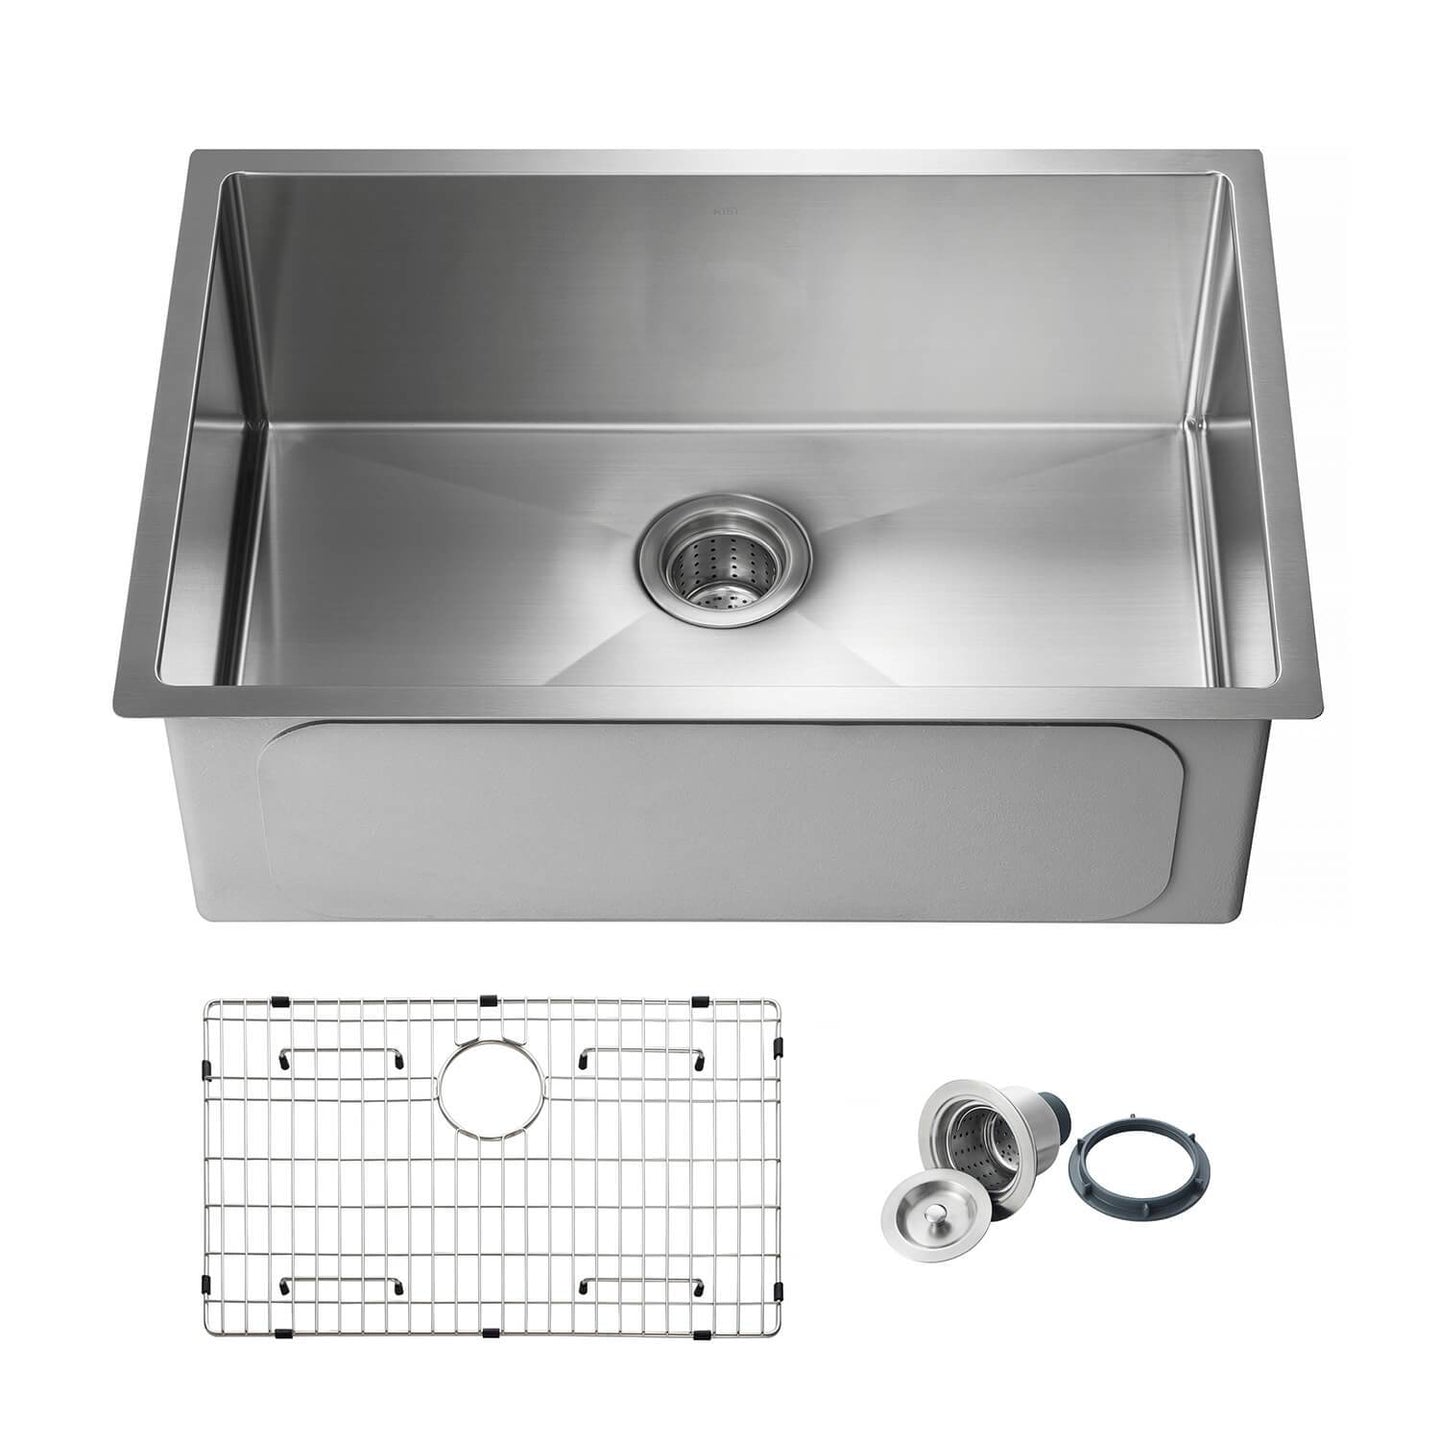 KIBI 28″ Handcrafted Undermount Single Bowl 16 gauge Stainless Steel Kitchen Sink